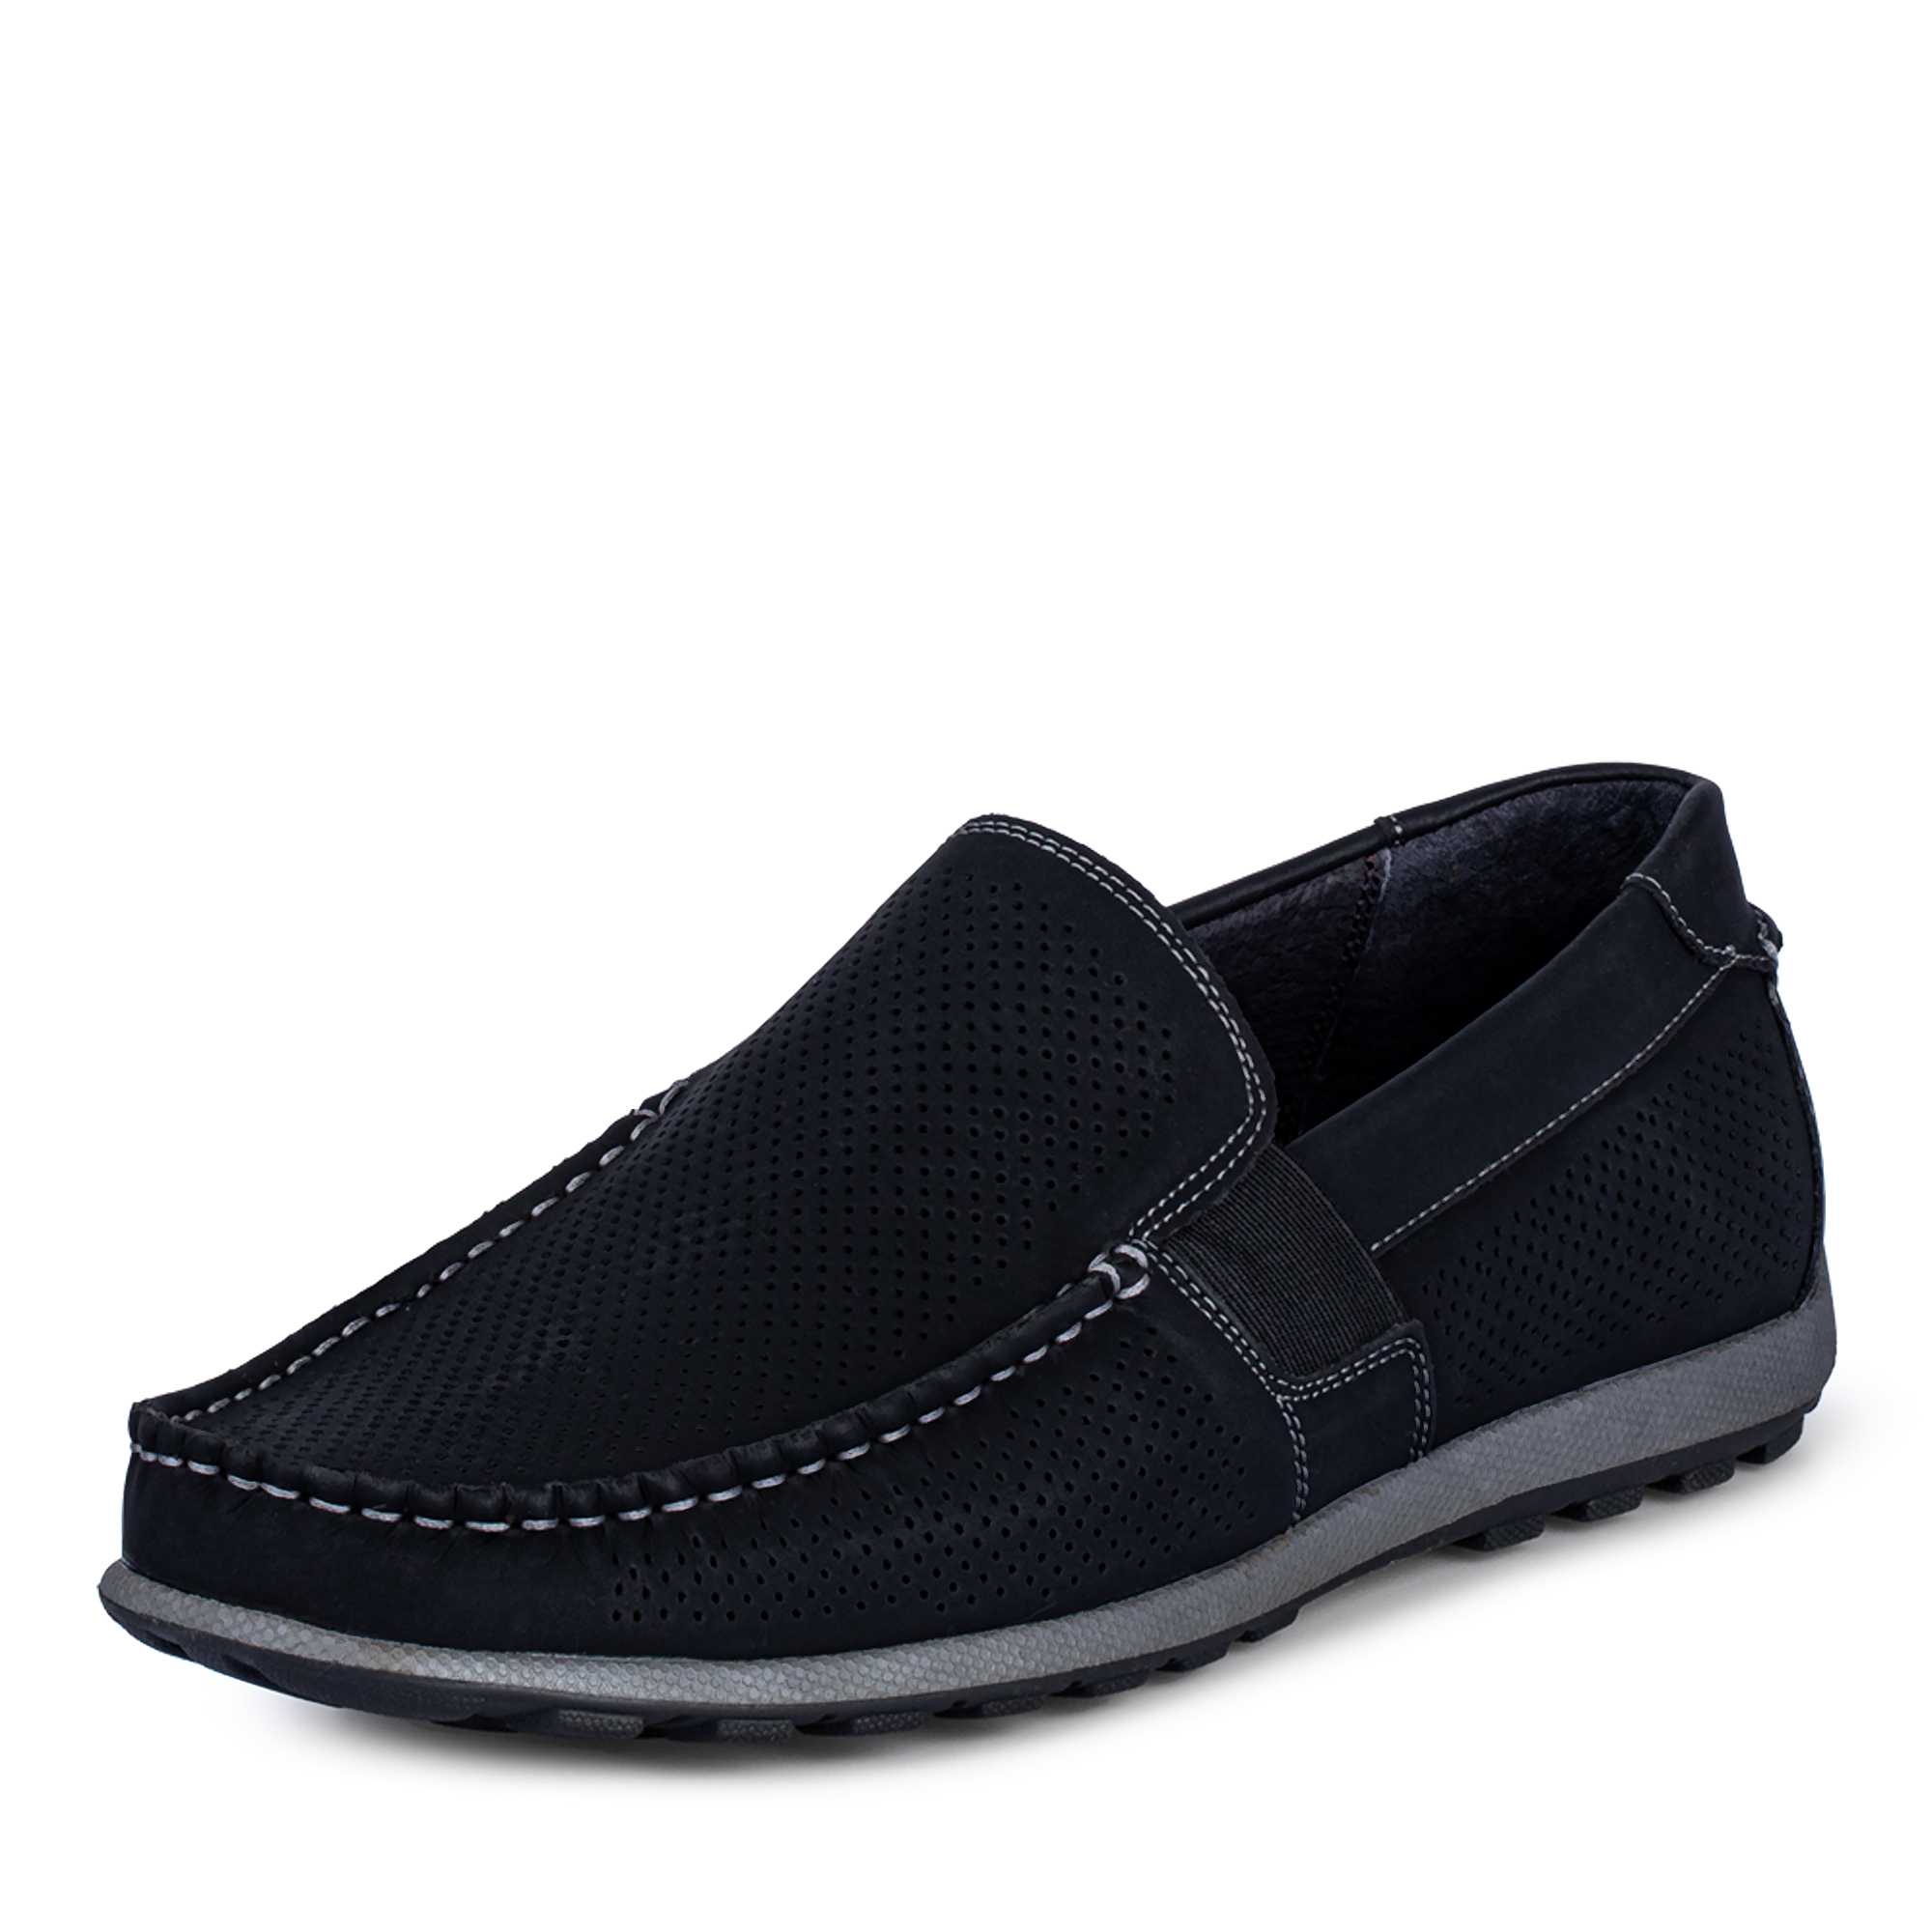 Туфли/полуботинки Thomas Munz 058-124C-1602, цвет черный, размер 41 - фото 2